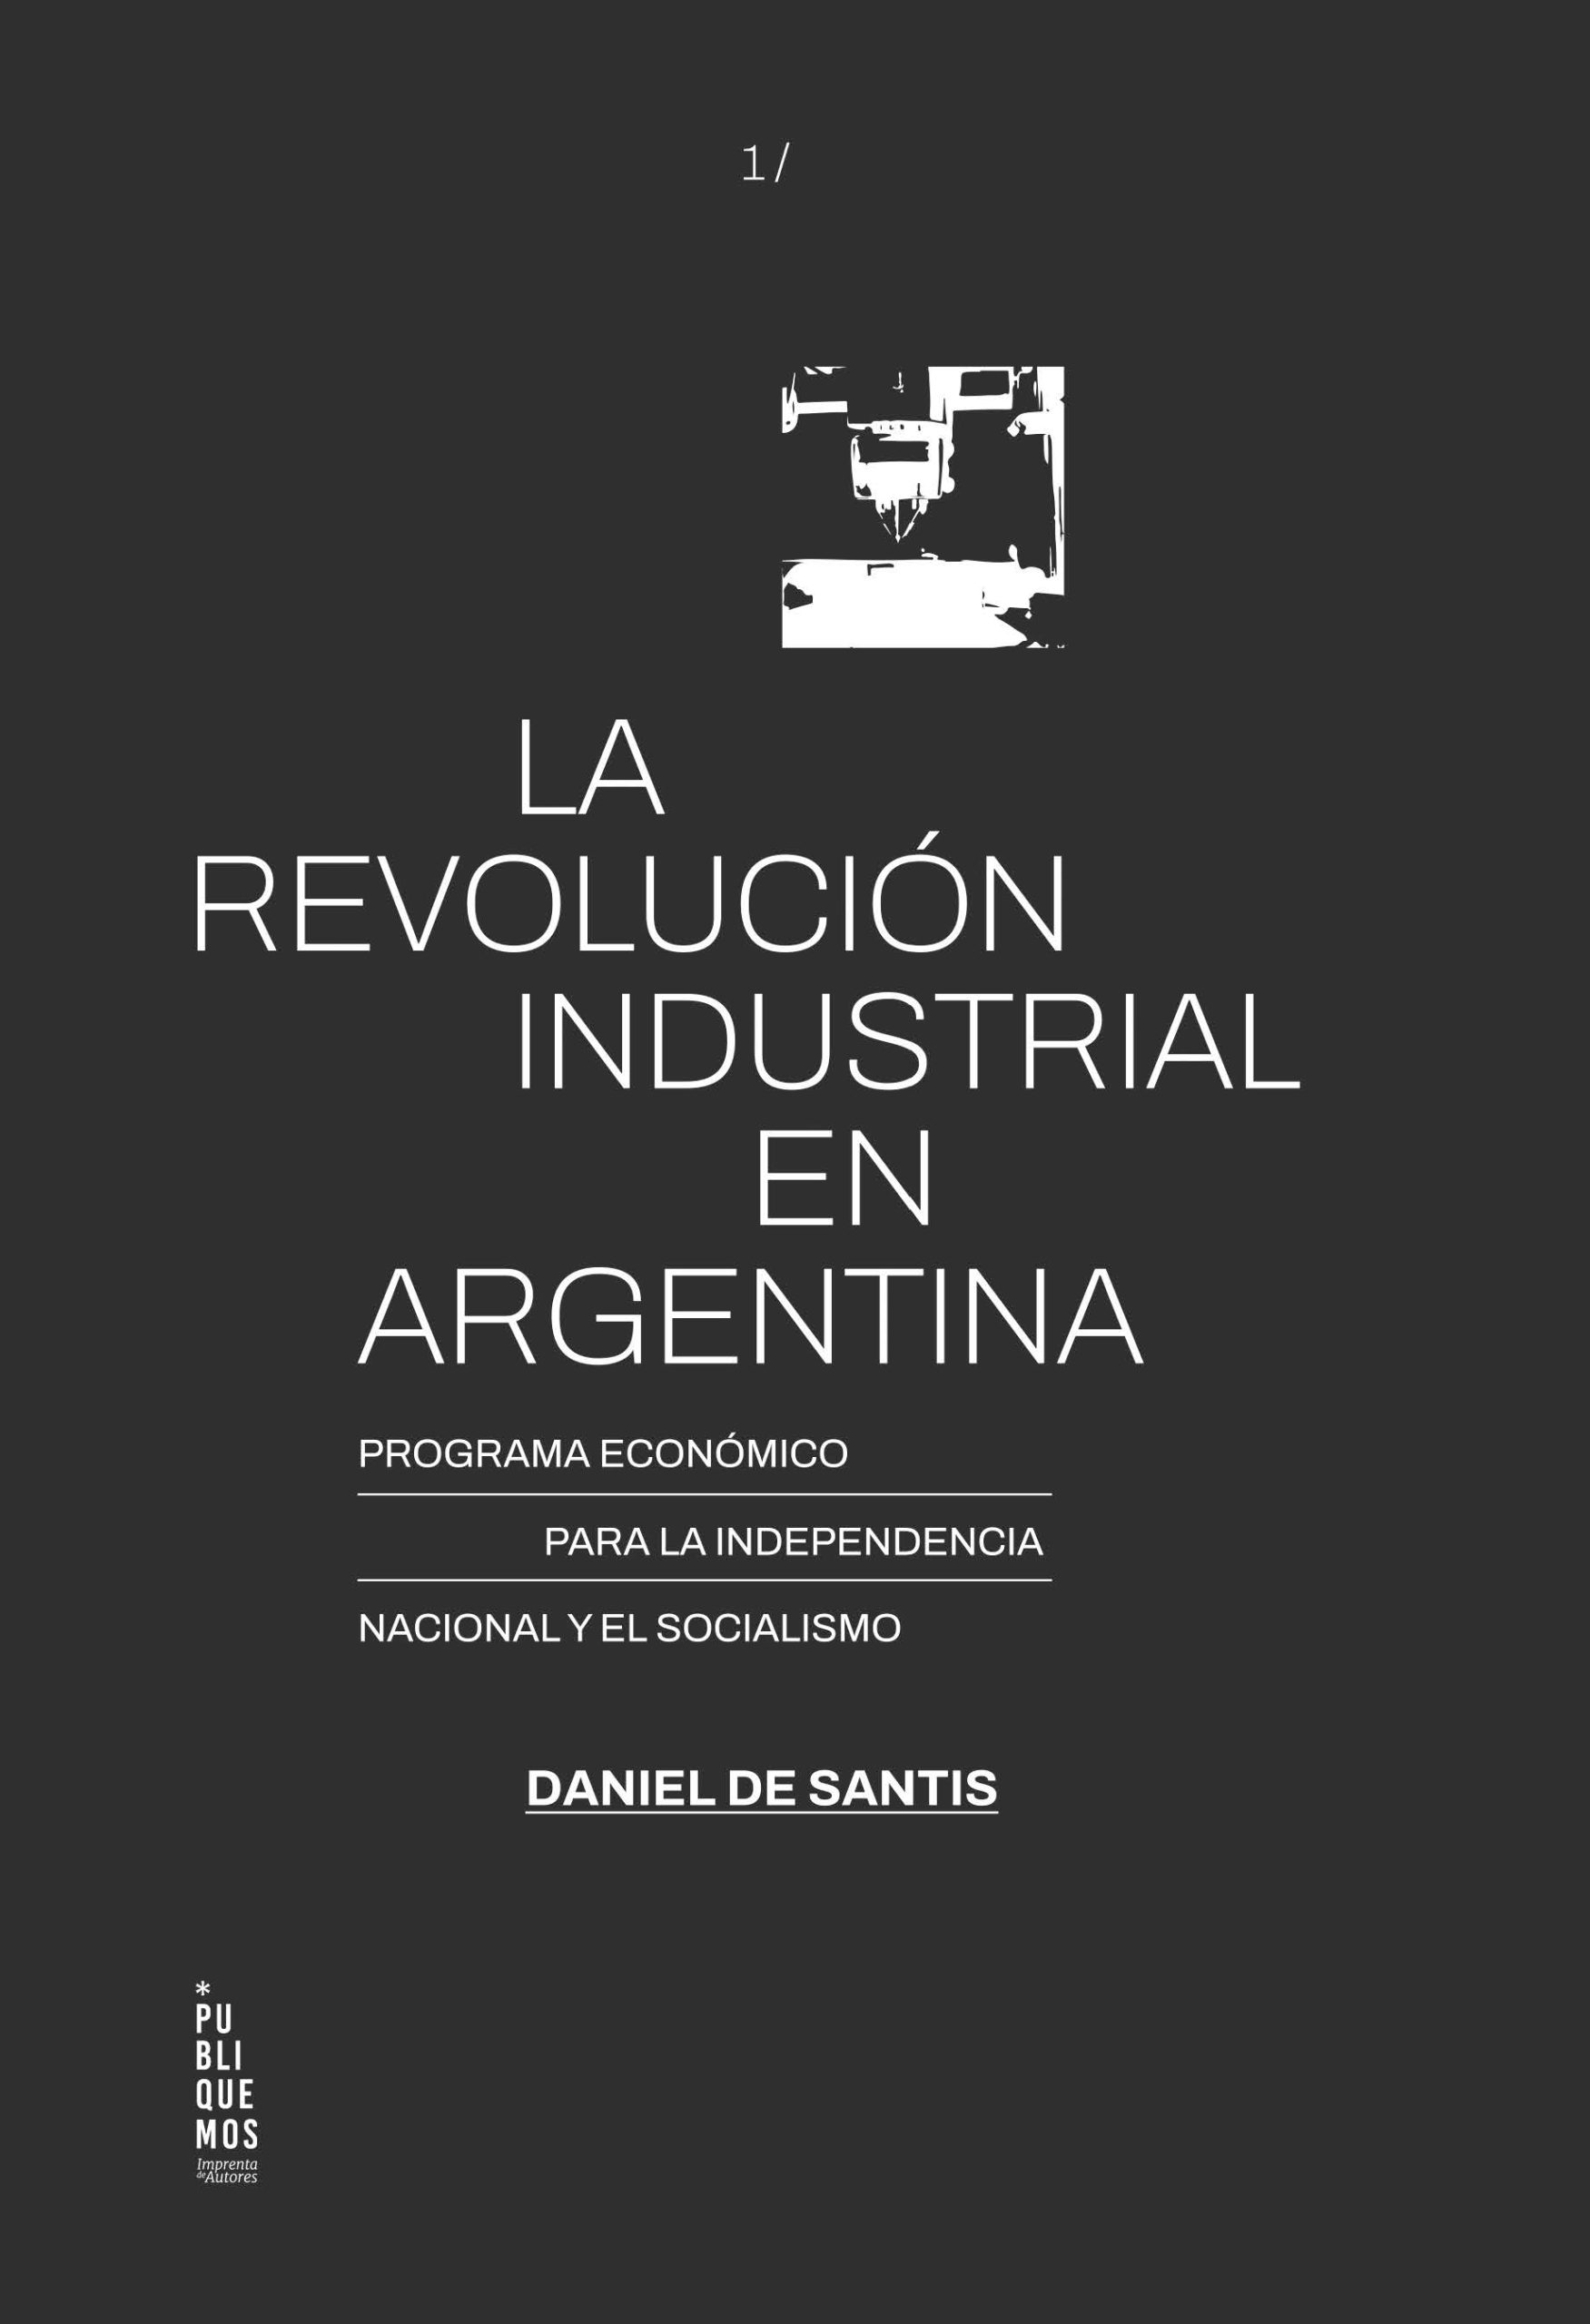 La revolución industrial en Argentina